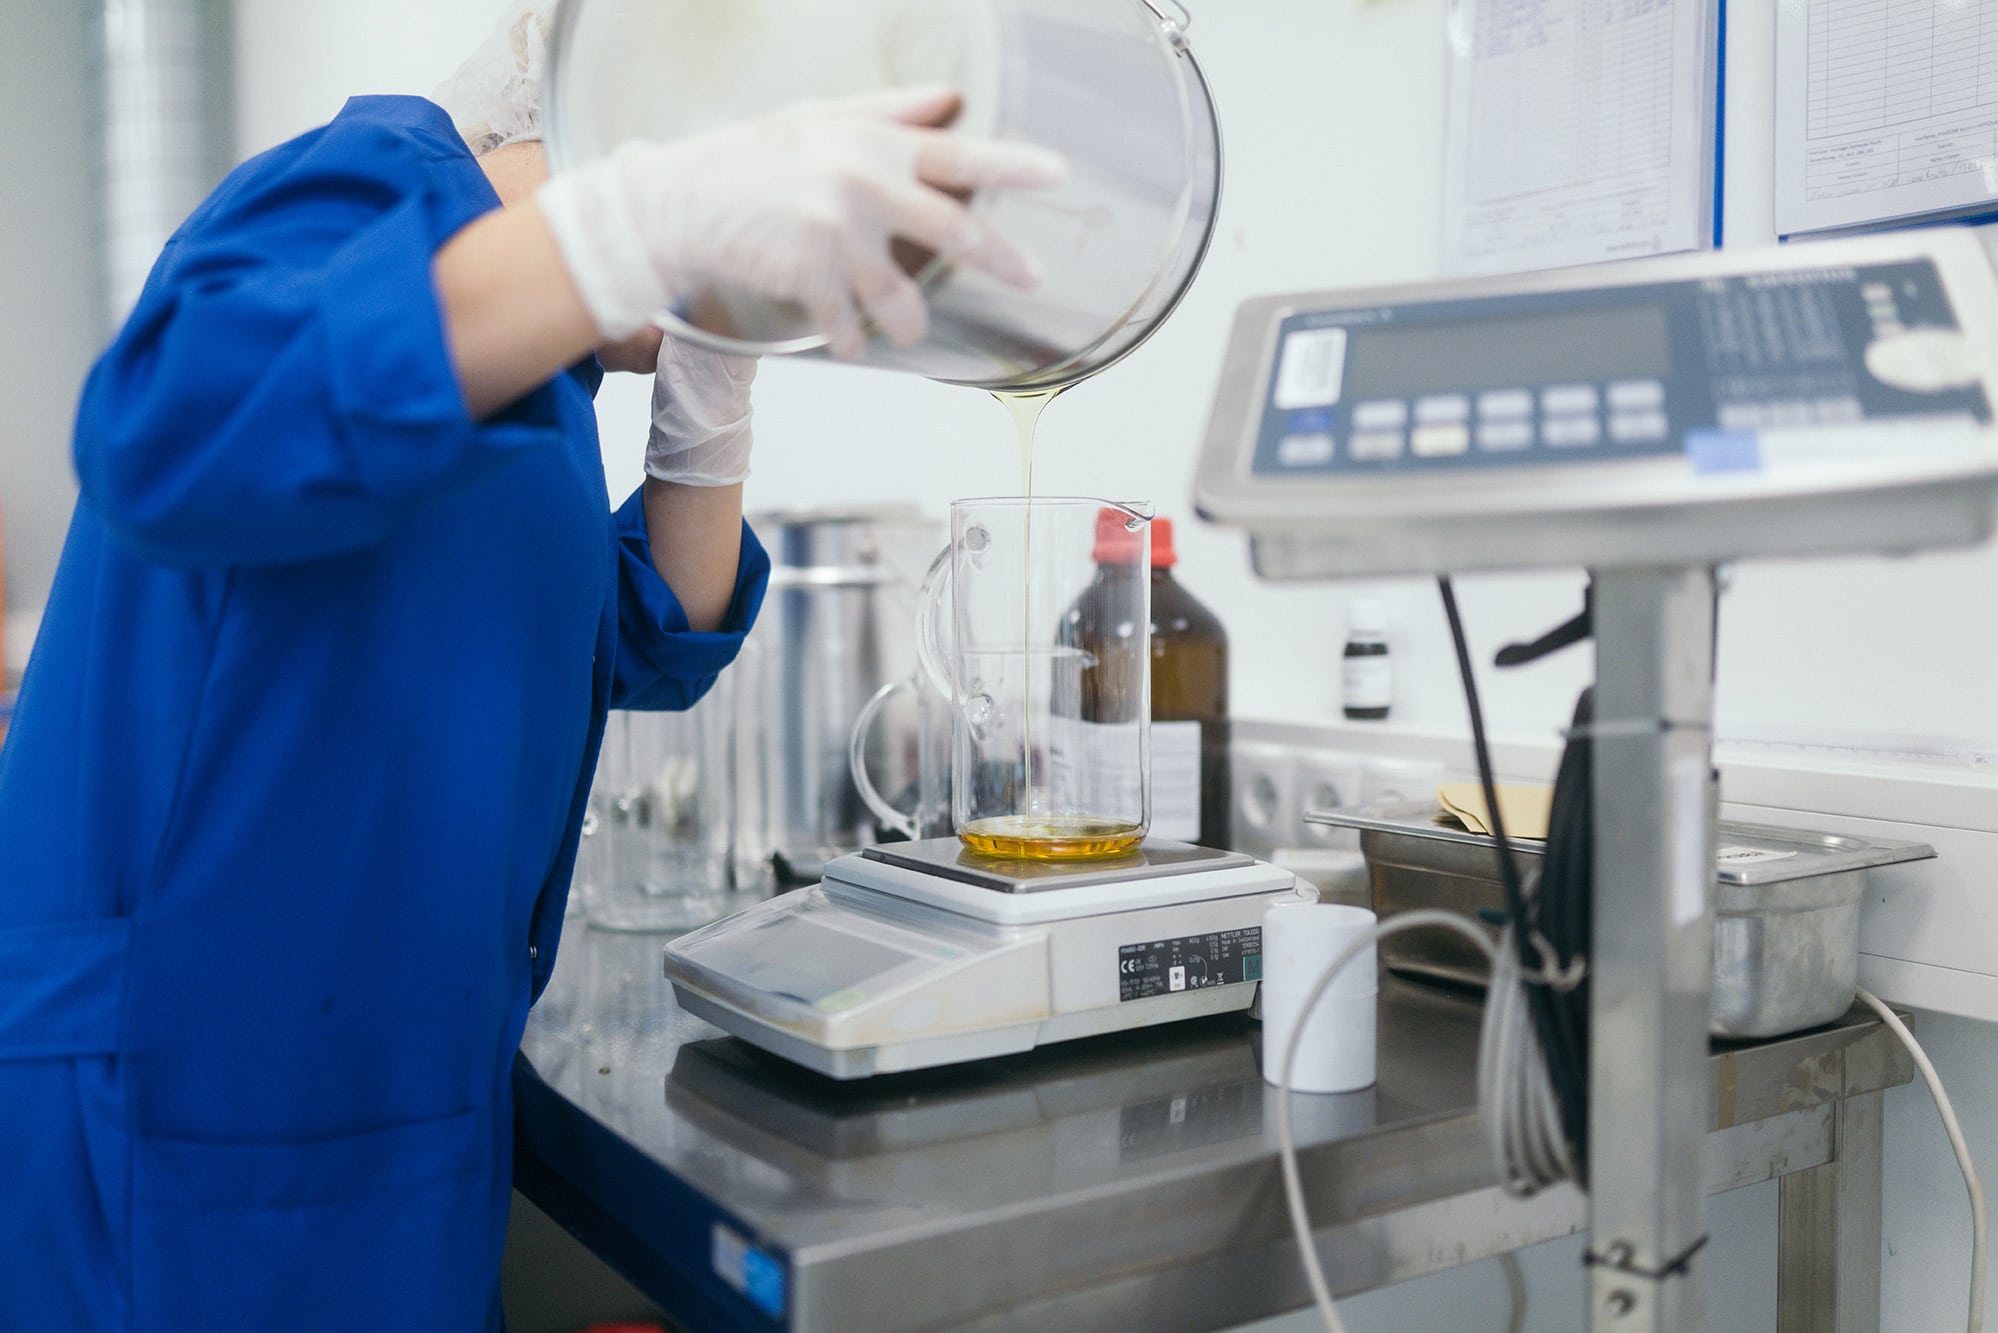 Foto aus dem Hanfama Labor: Öl wird von von Person mit blauem Kittel und weißen Handschuhen auf einer Waage abgefüllt